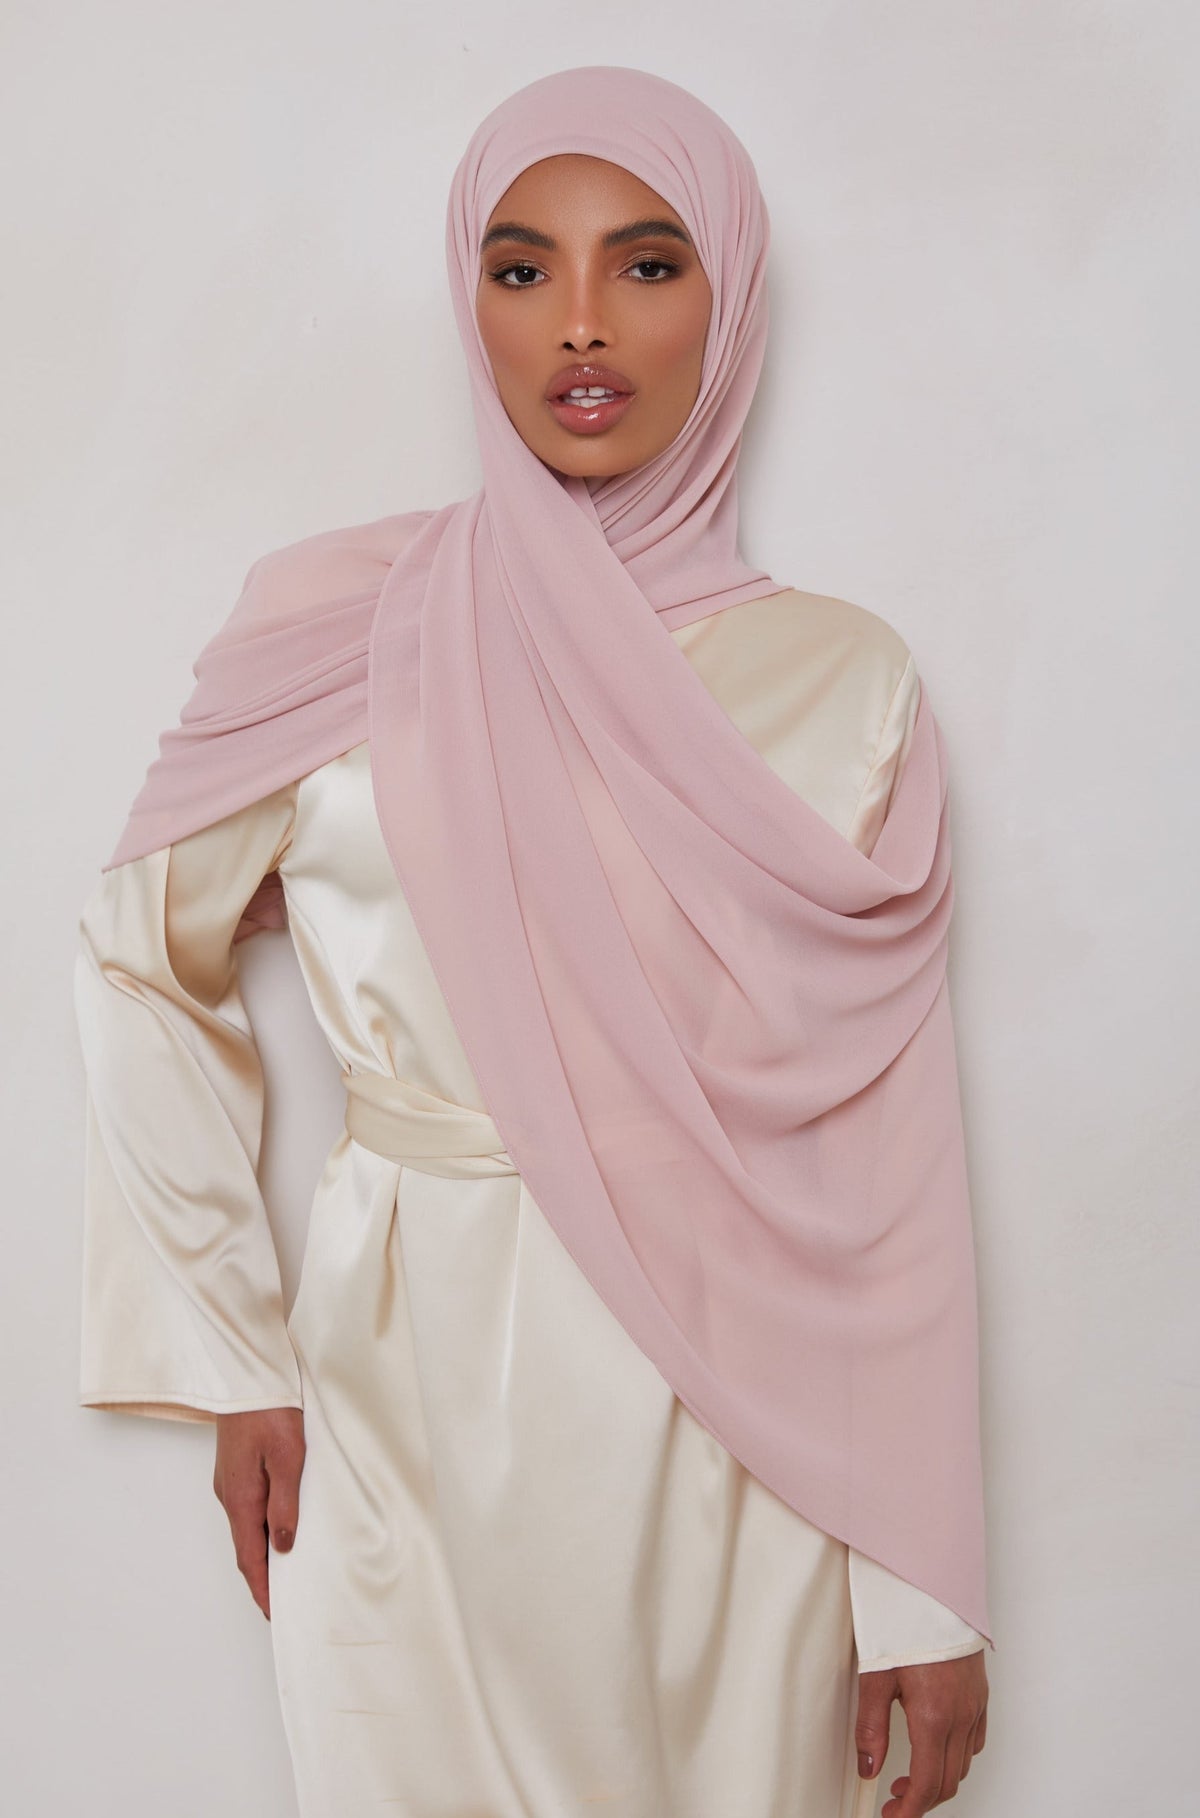 Essential Chiffon Hijab - Blush Pink Scarves & Shawls epschoolboard 